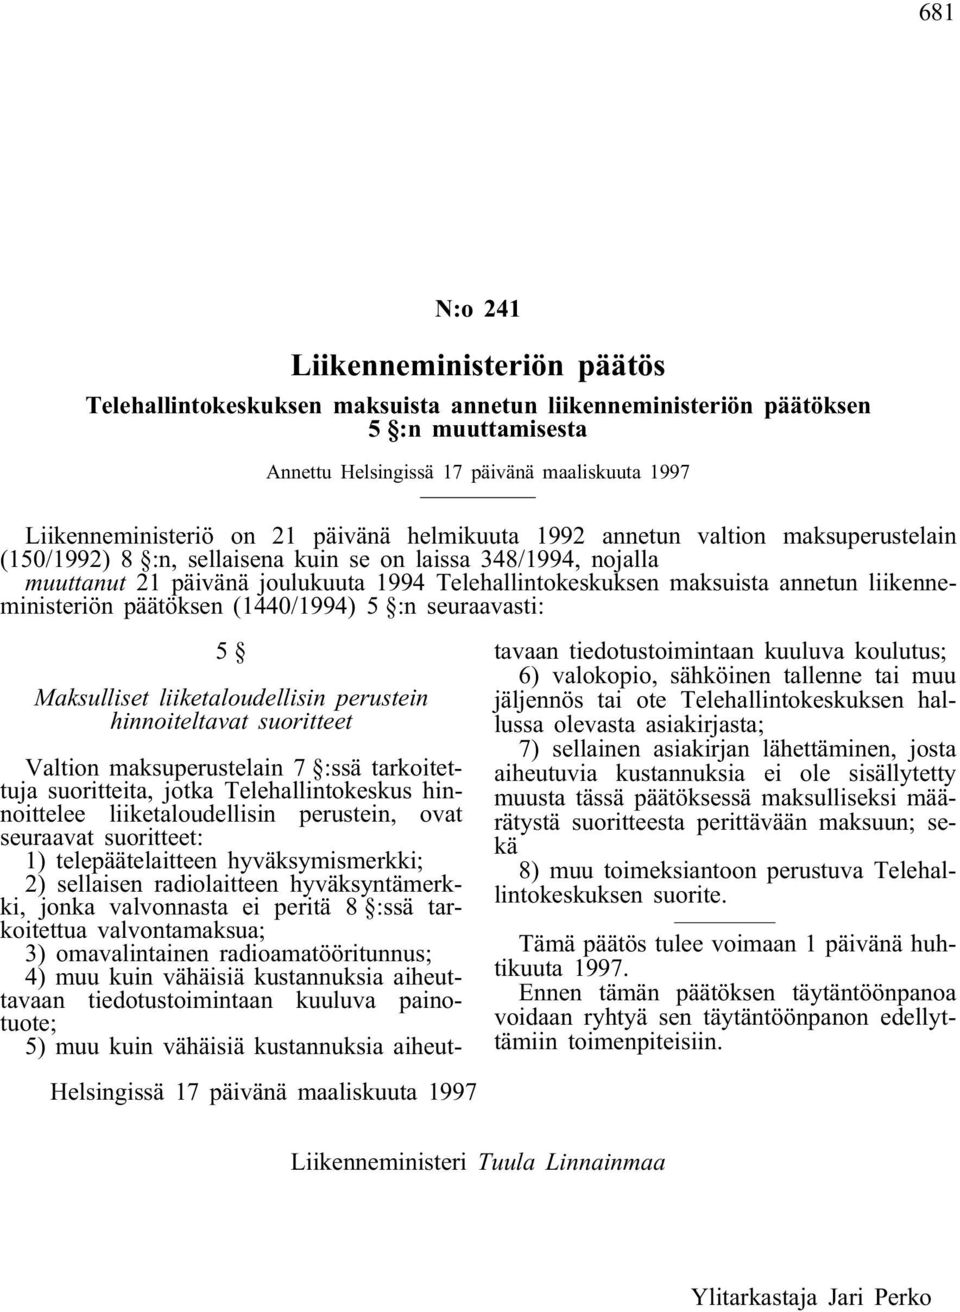 annetun liikenneministeriön päätöksen (1440/1994) 5 :n seuraavasti: 5 Maksulliset liiketaloudellisin perustein hinnoiteltavat suoritteet Helsingissä 17 päivänä maaliskuuta 1997 Valtion